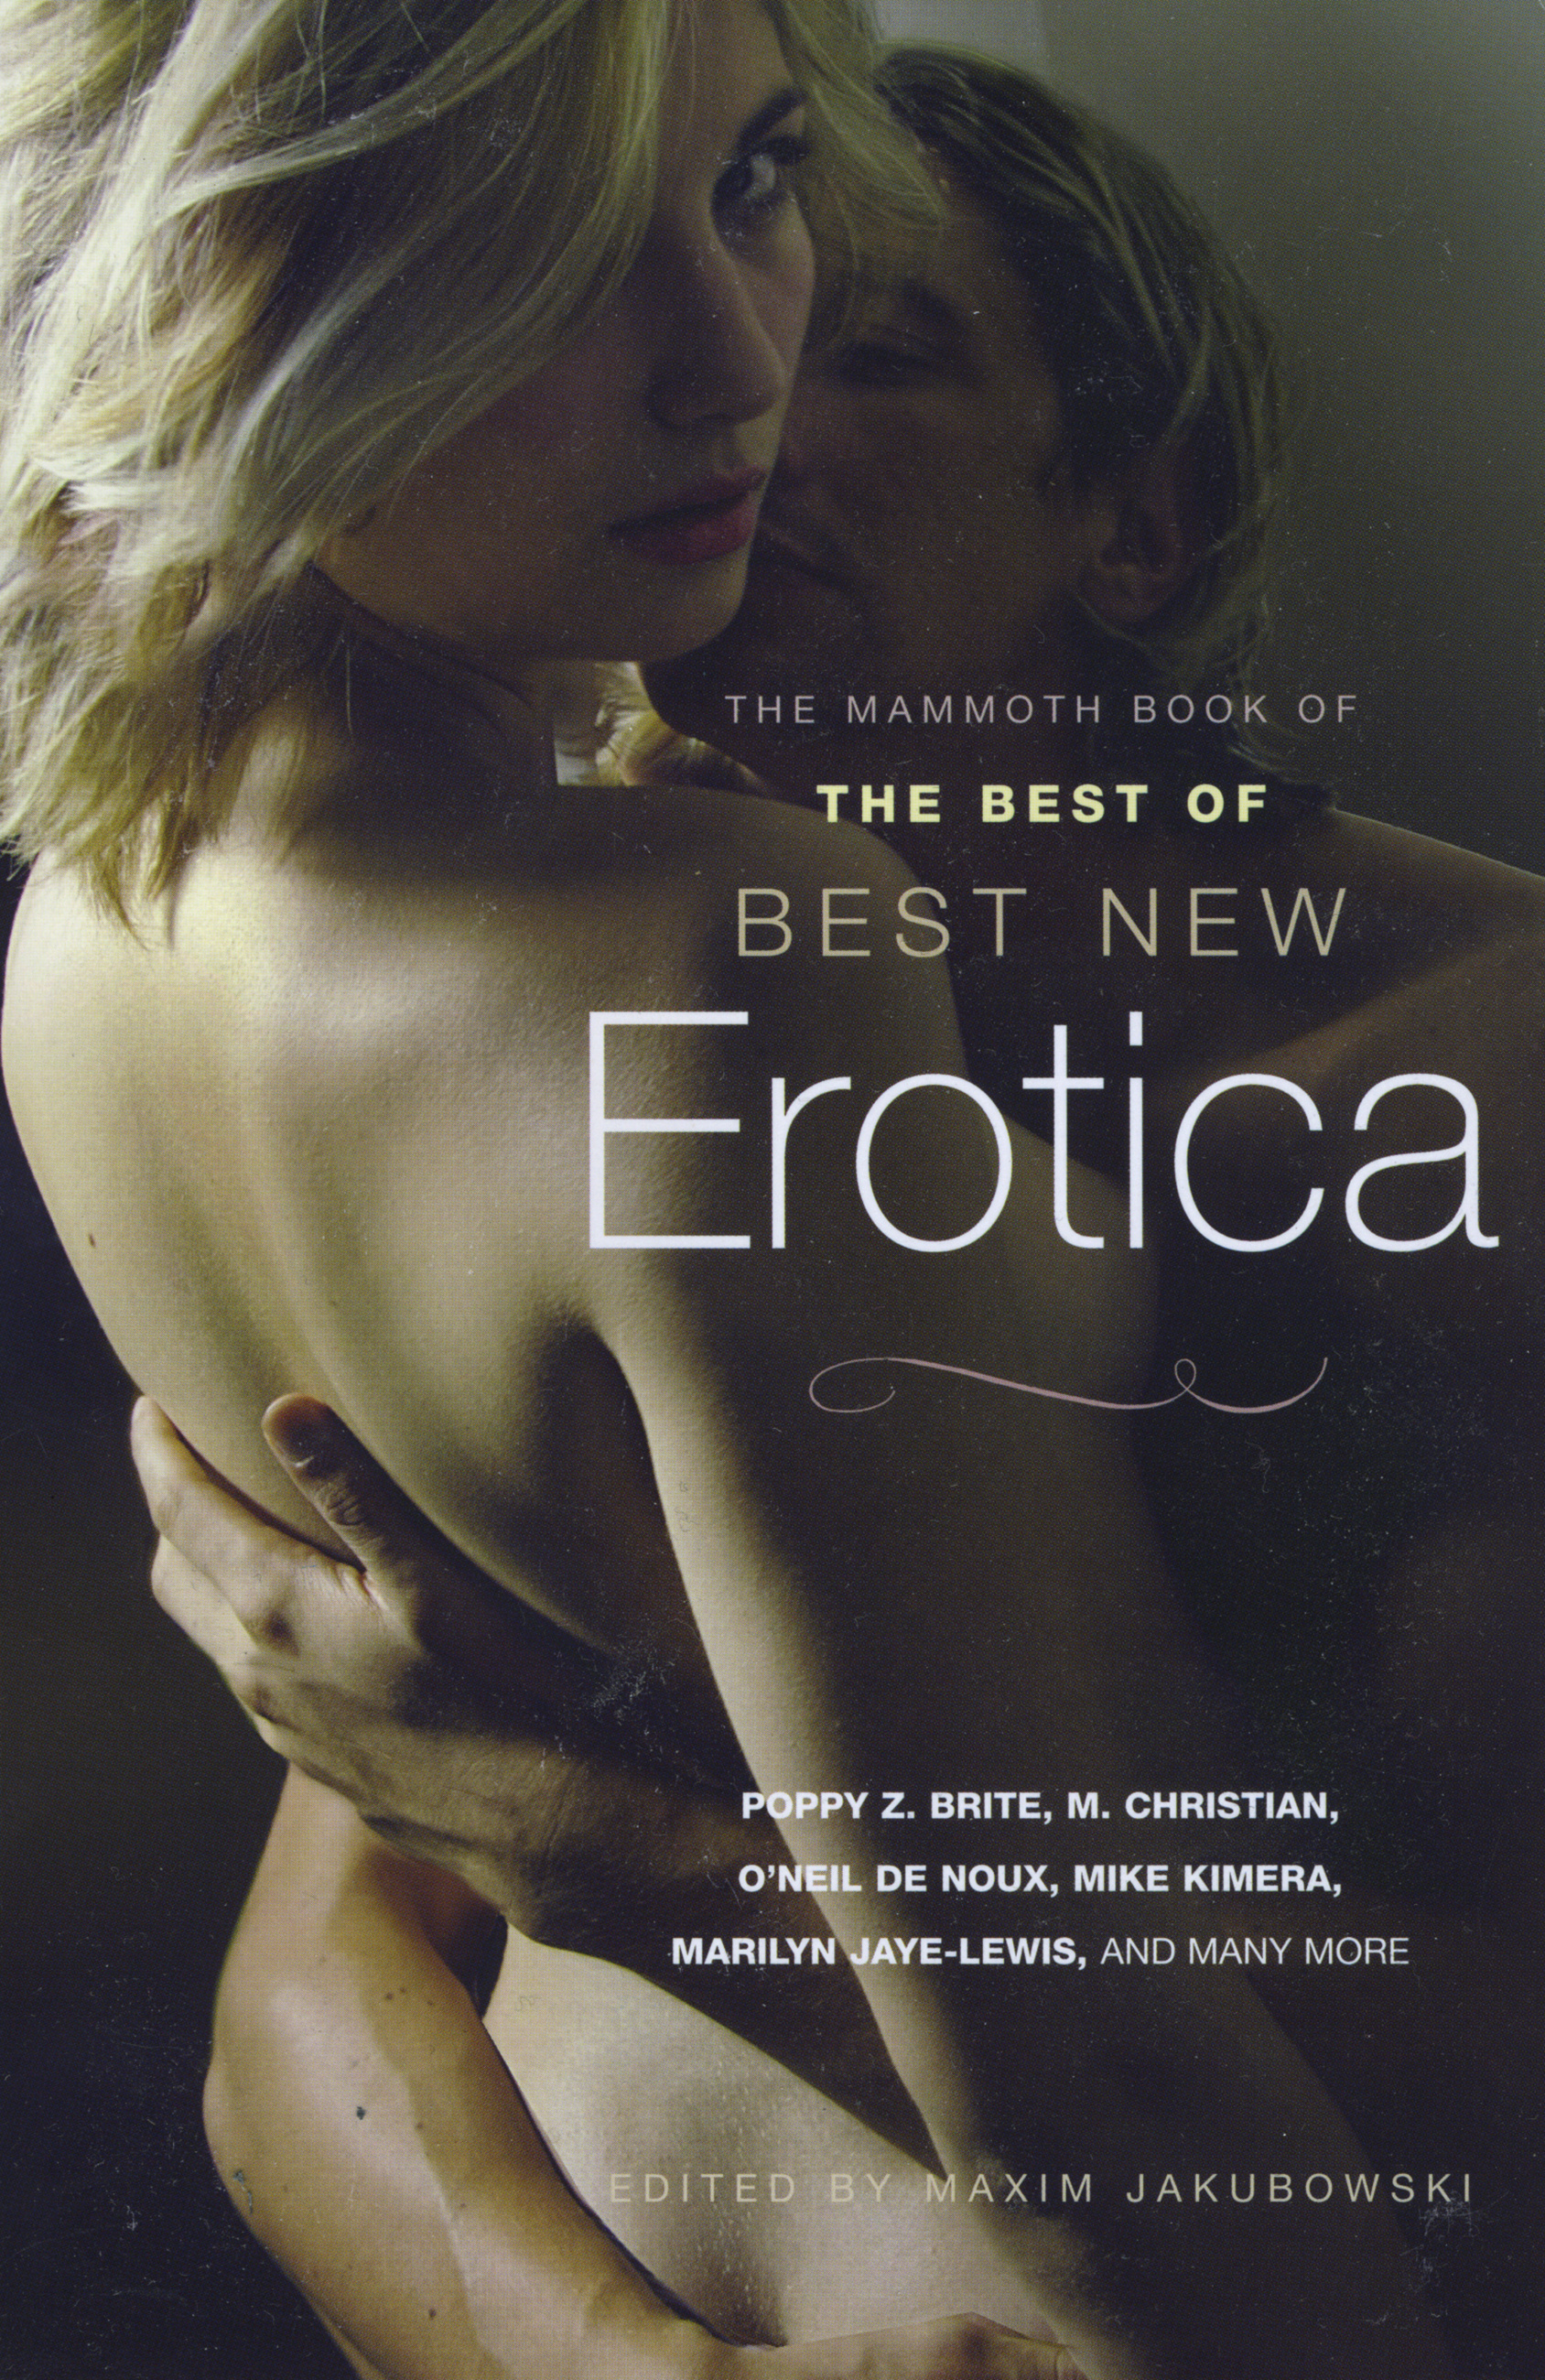 Erotic films last decade